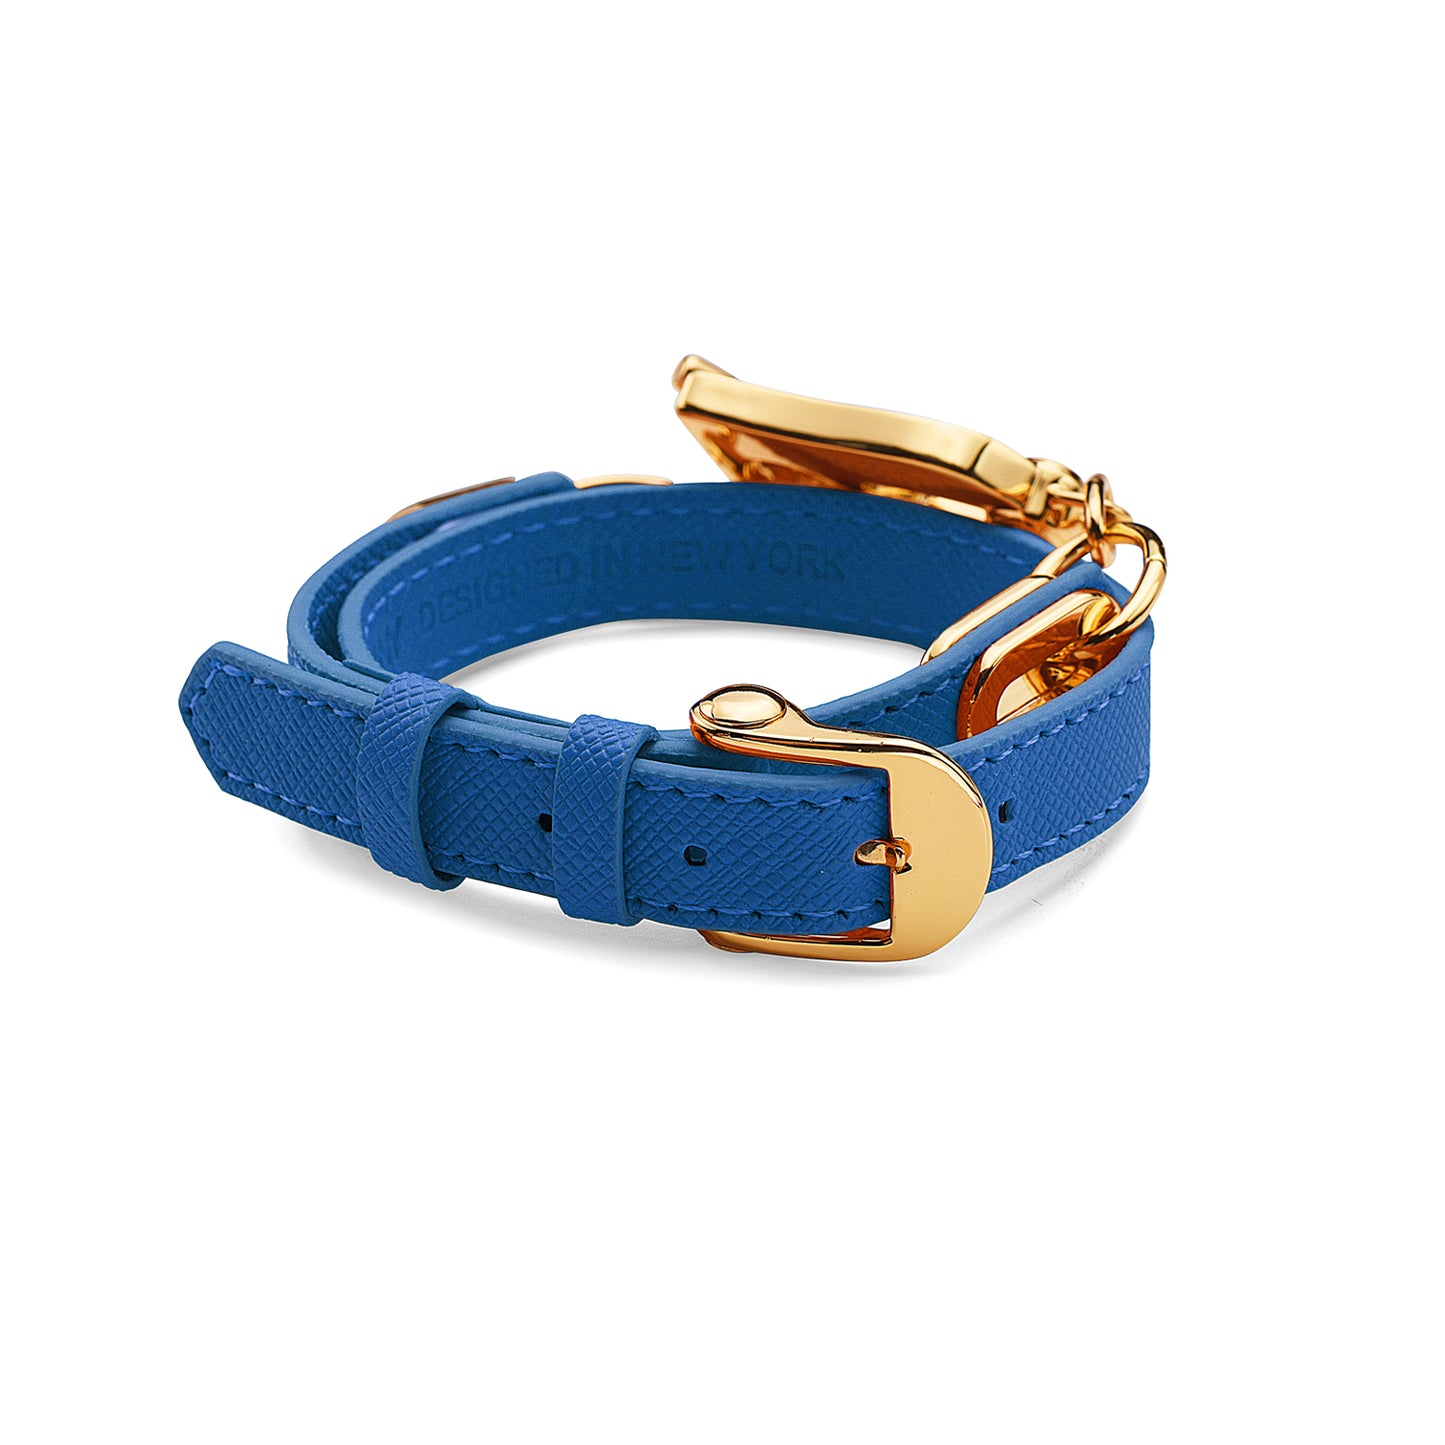 Paris Bracelet - Gold/Light Blue